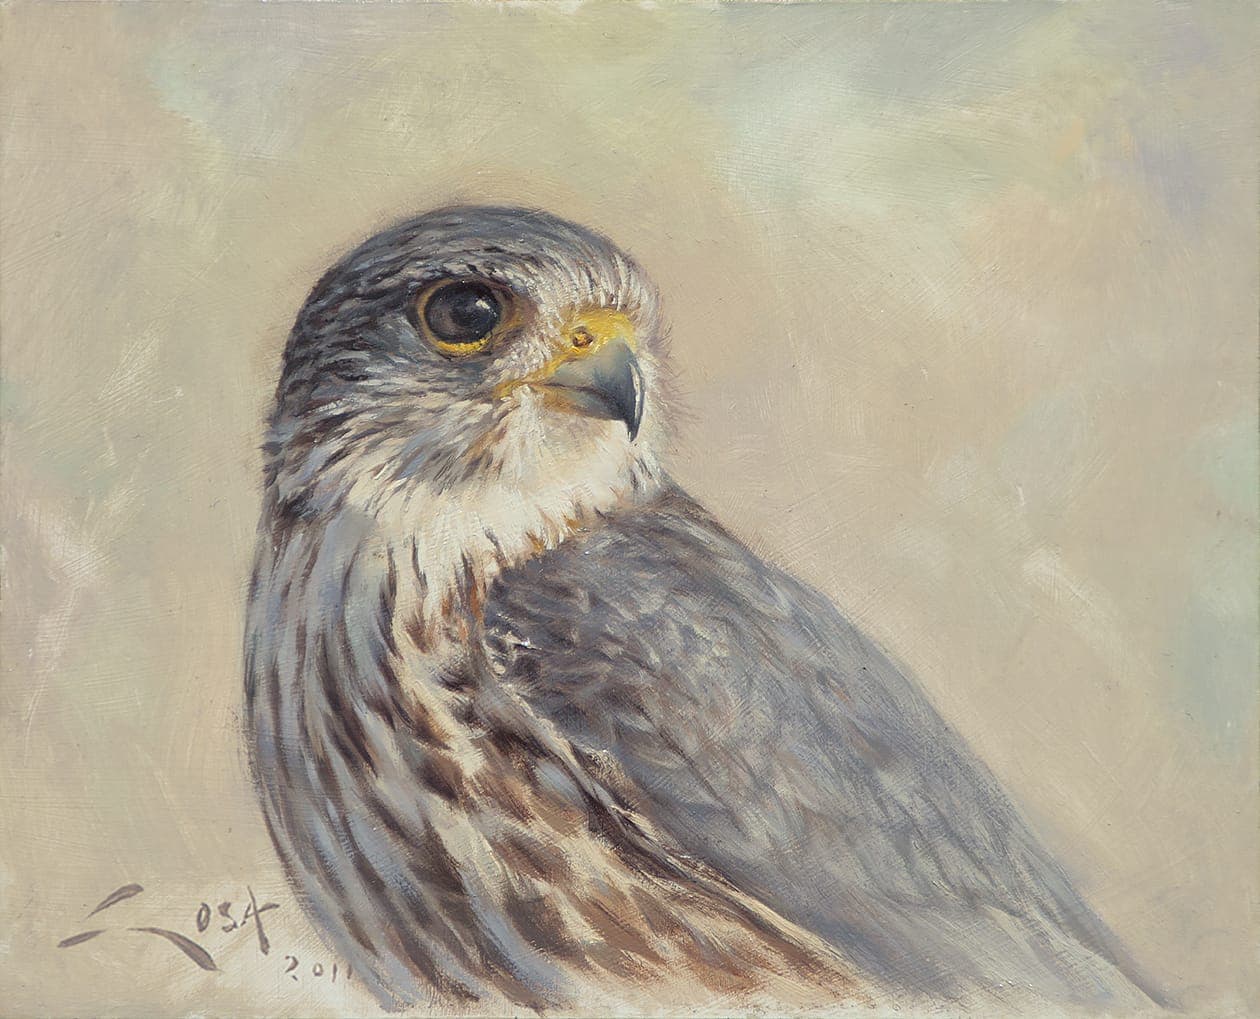 Merlin (Falco columbarius) picture